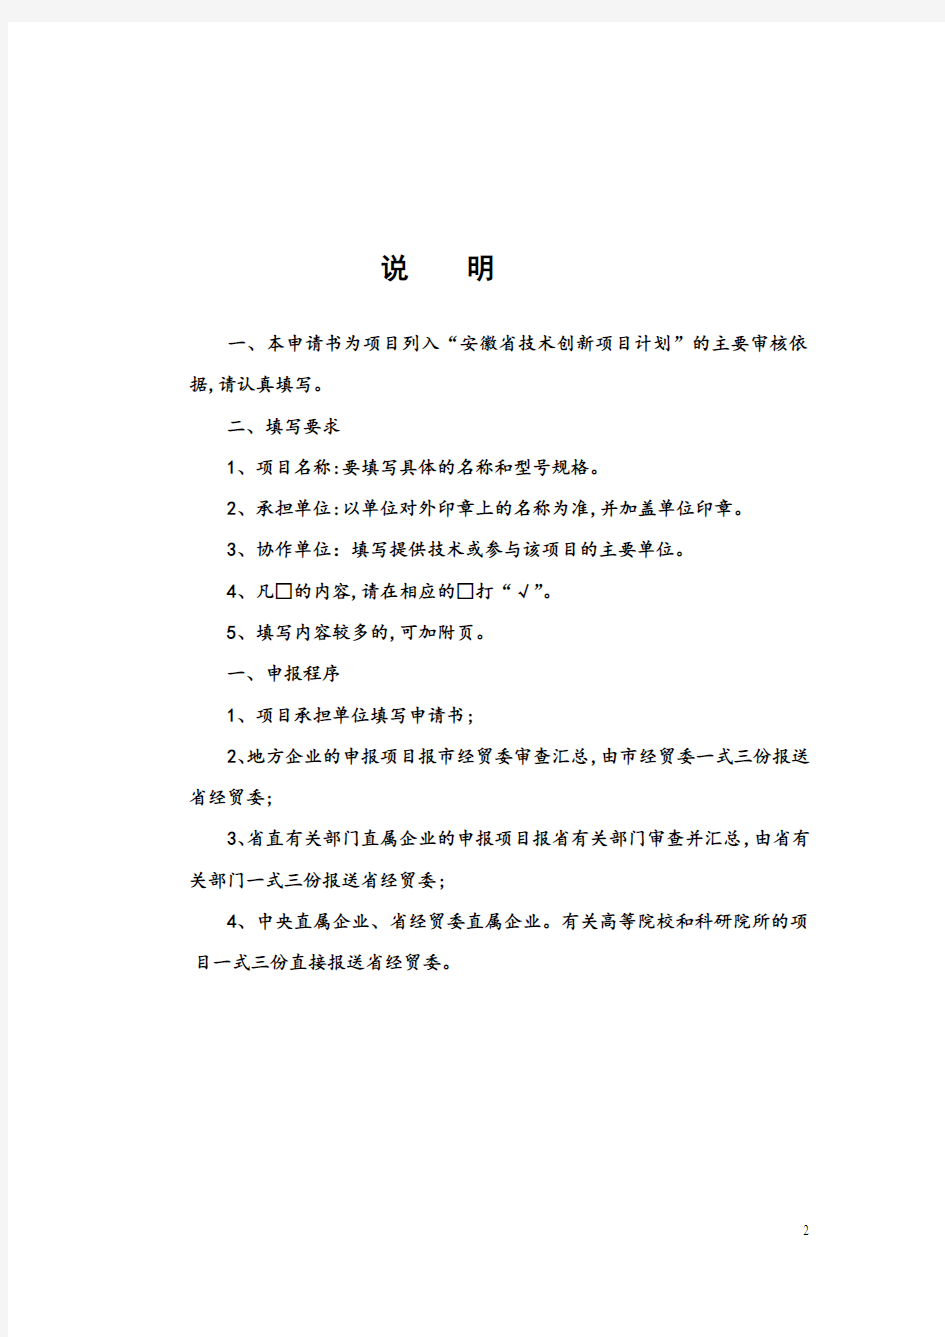 安徽省技术创新方案申请书